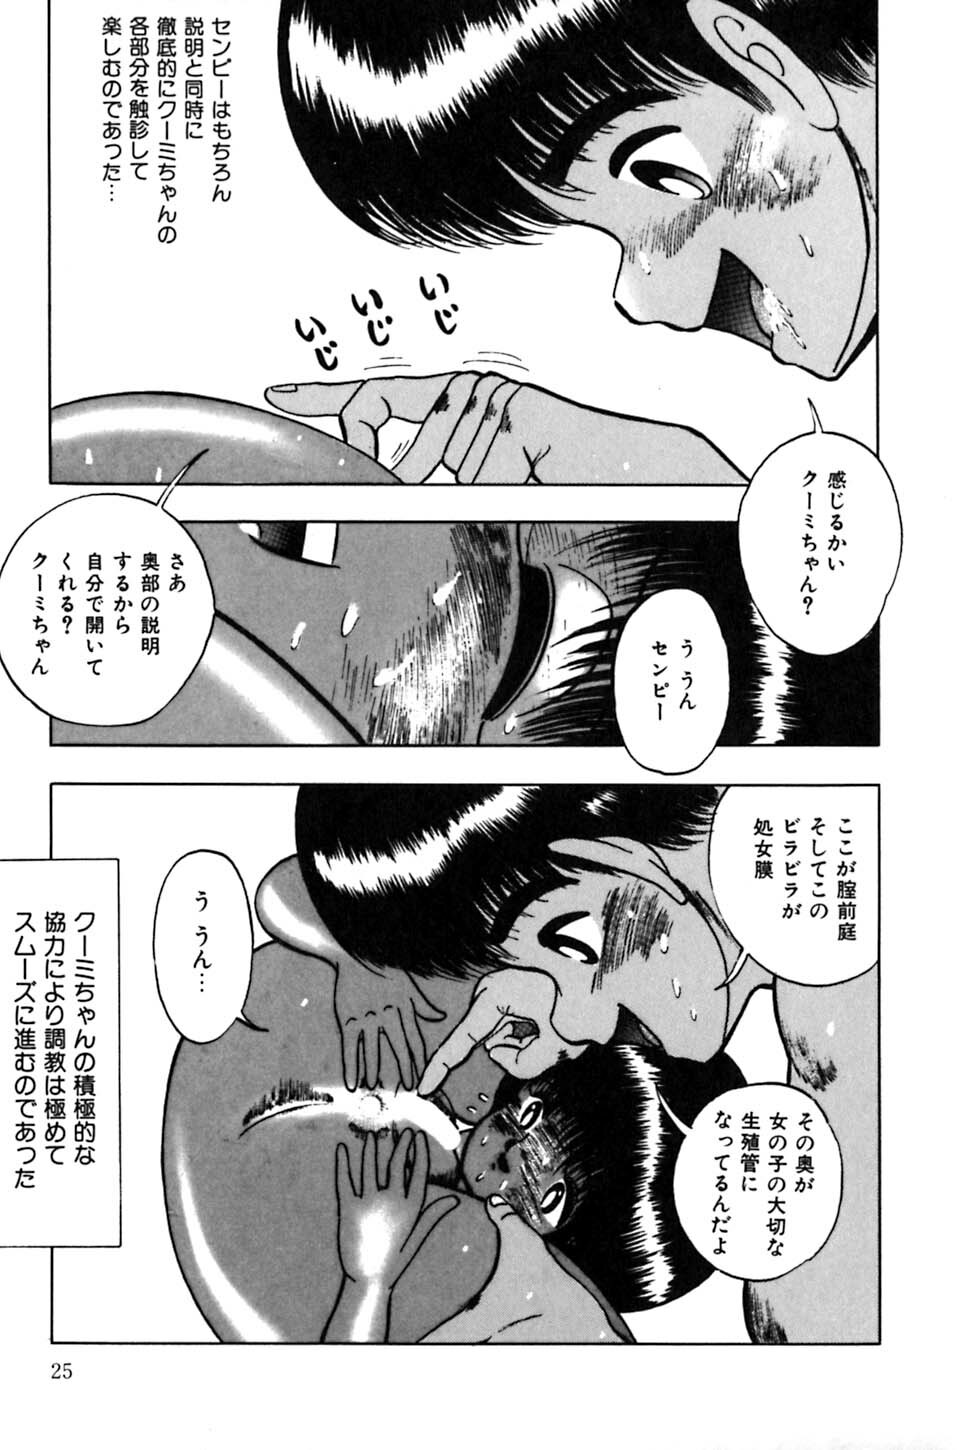 [Eiri Kiku] Minami no Kuni no Kuumi page 28 full